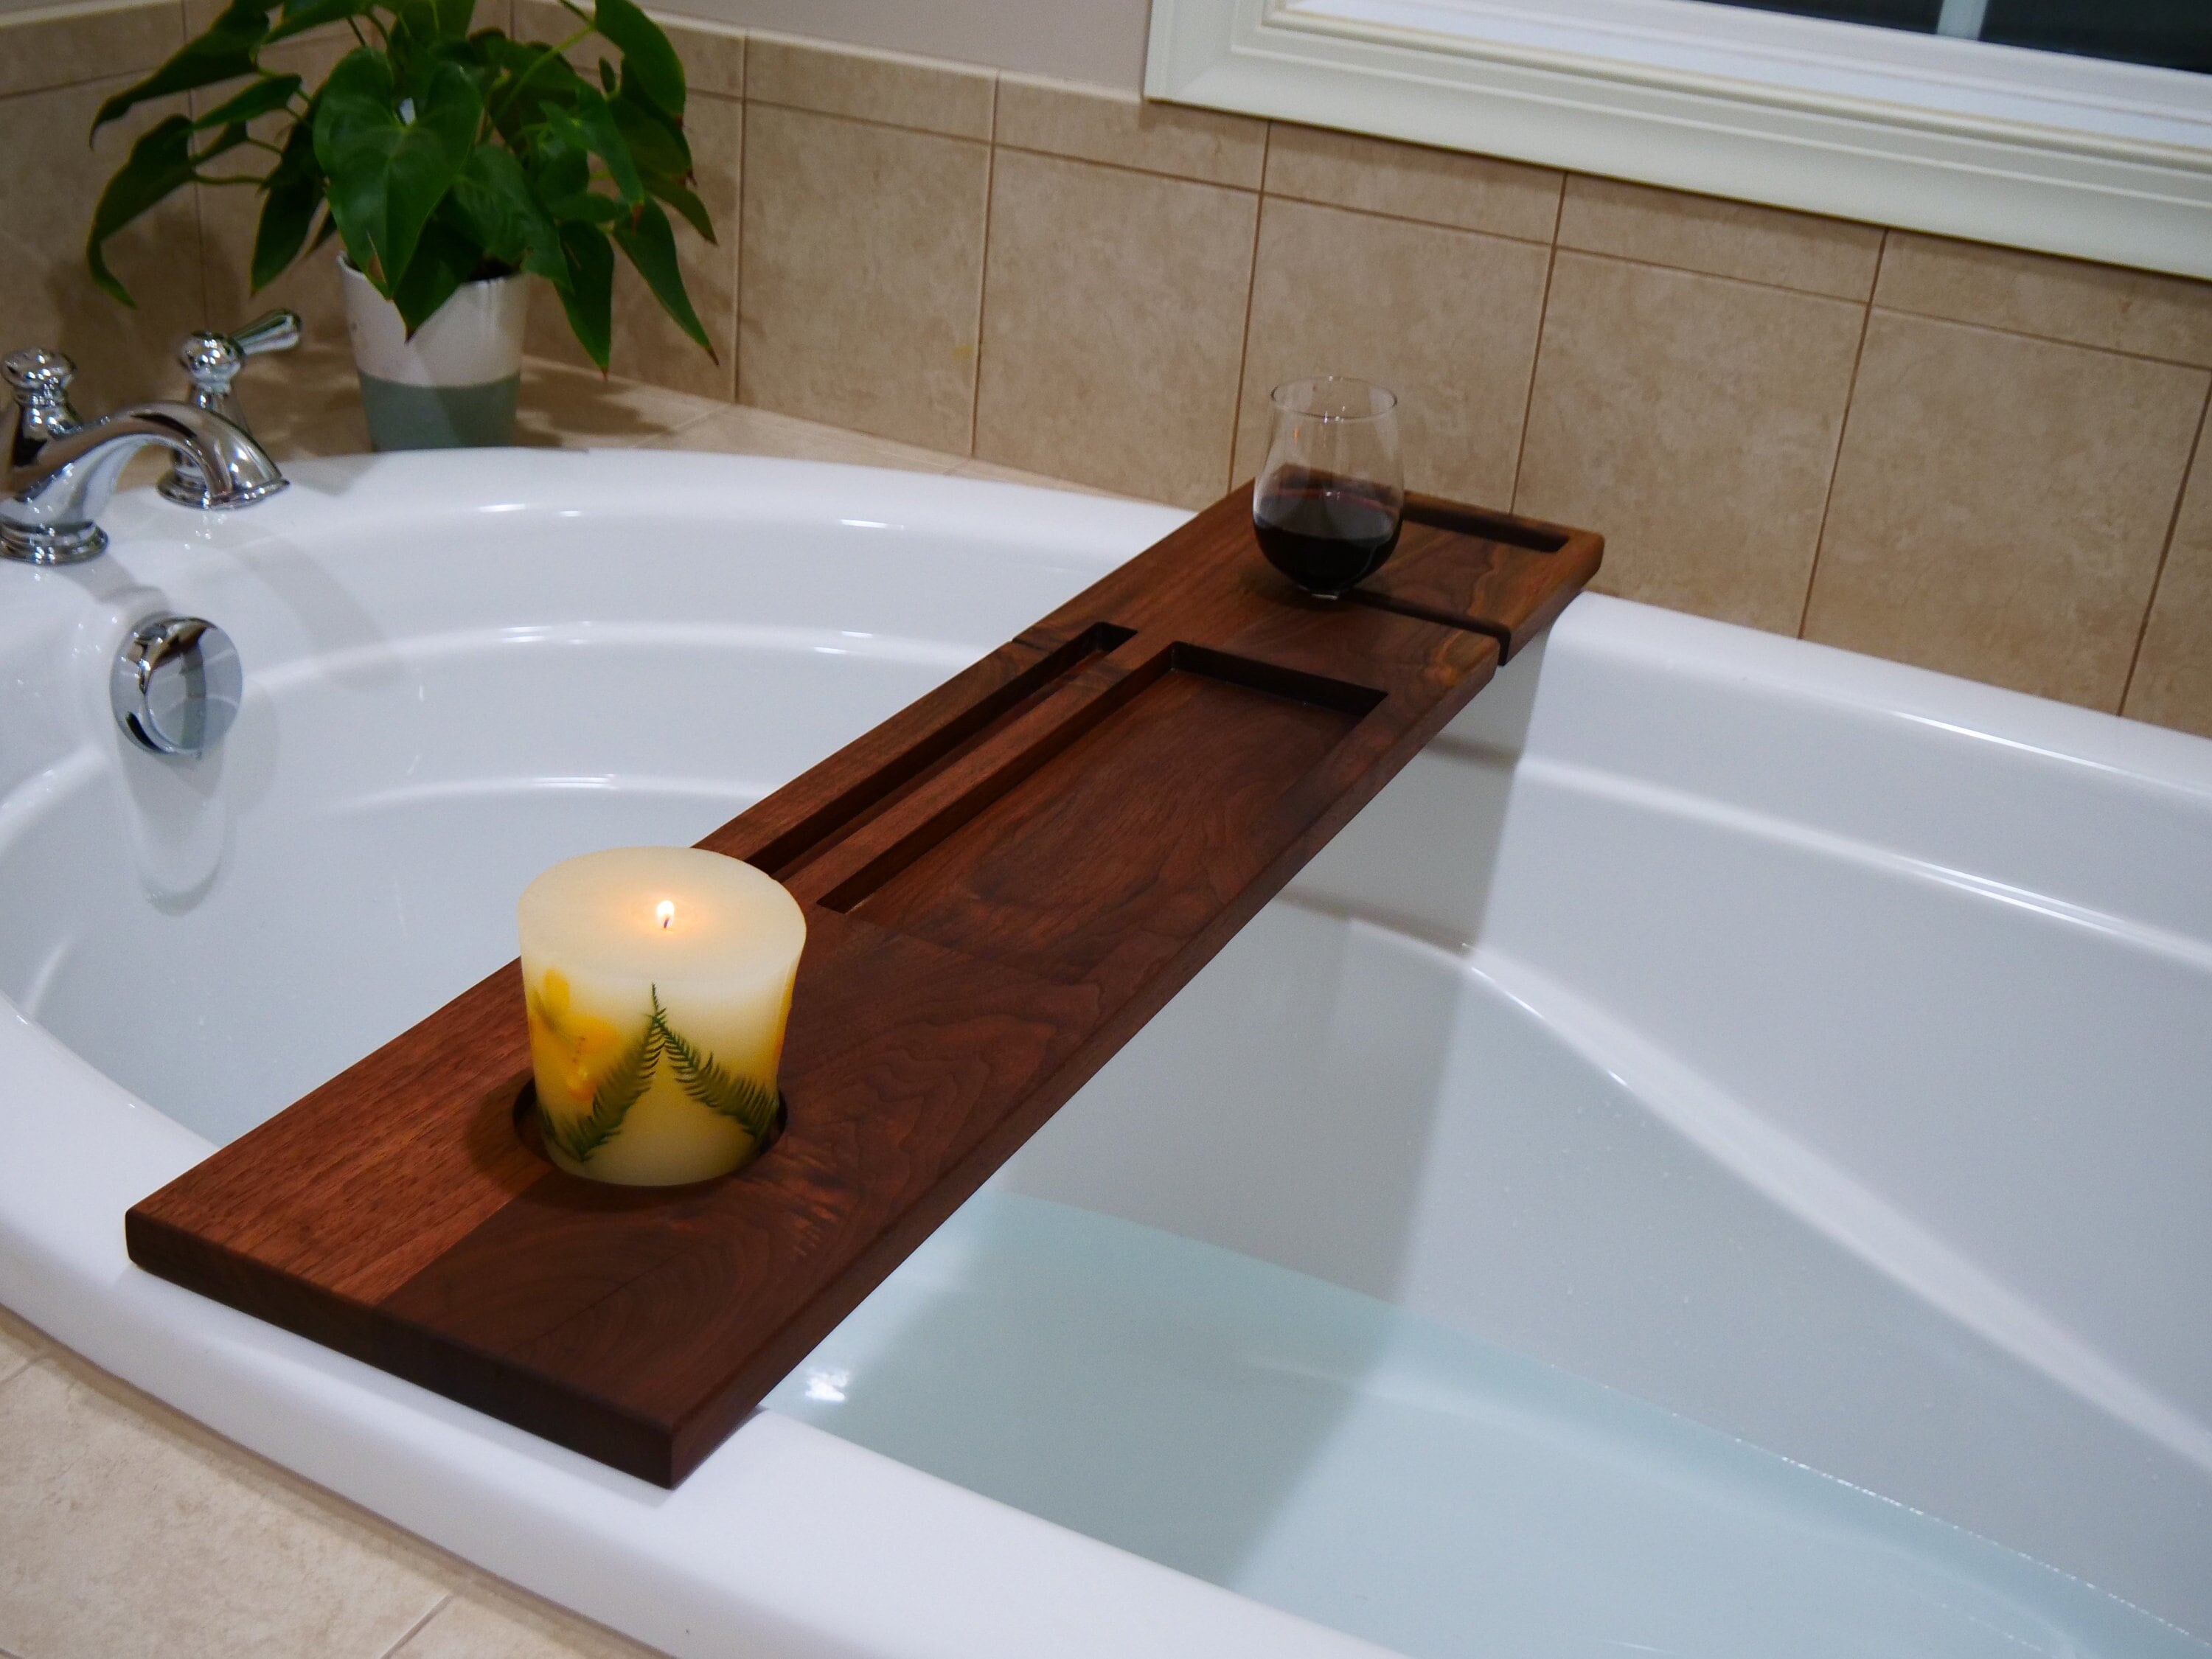  EcoFives Teak Bathtub Tray Caddy - Expandable Bath Tray -  Adjustable Organizer Tray for Bathroom - Luxury Bath Caddy Tub Table,  Bathtub Accessories & Bathroom Gadgets : Home & Kitchen